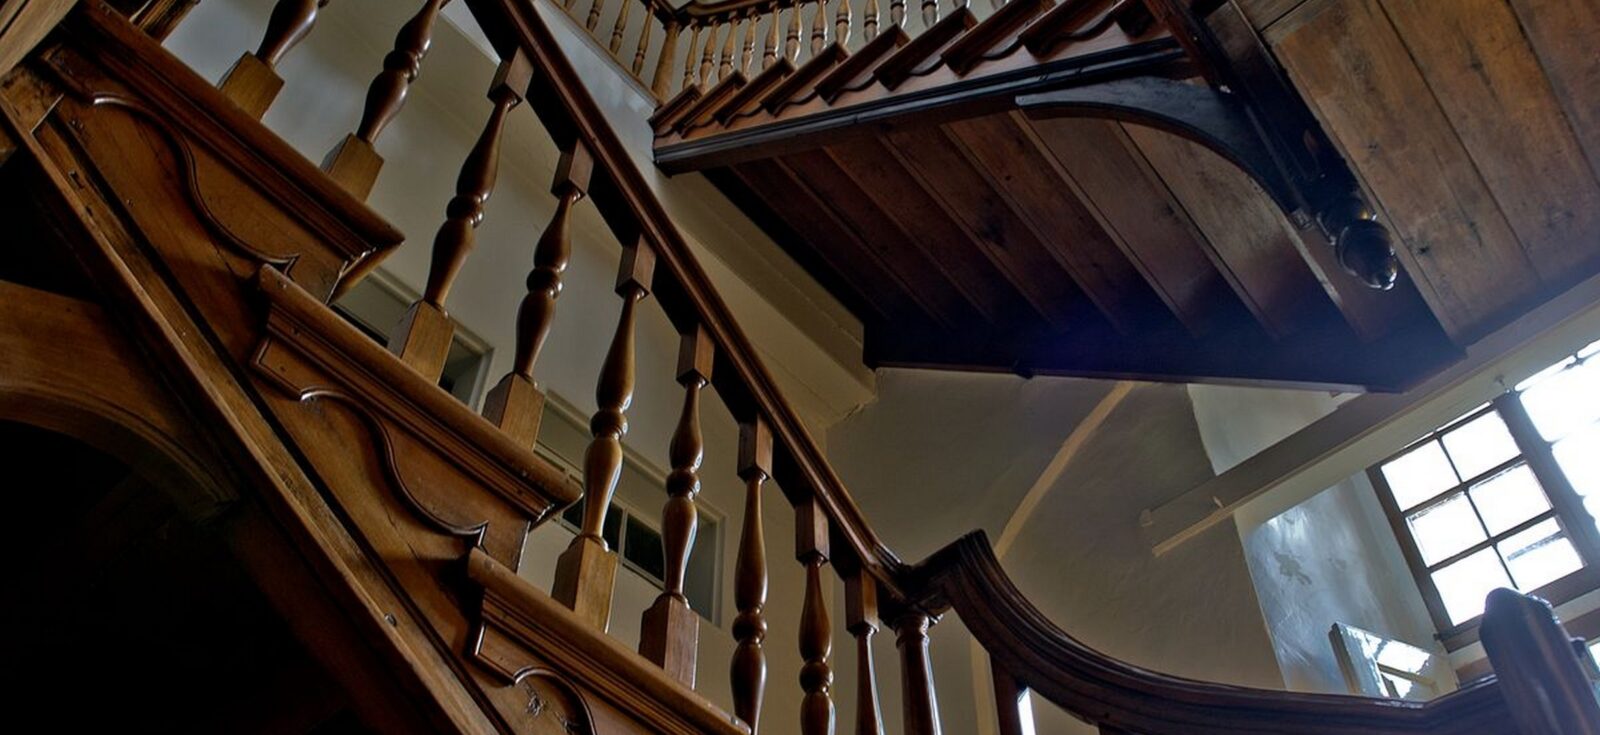 Le grand escalier du monastère de l’Hôpital général de Québec